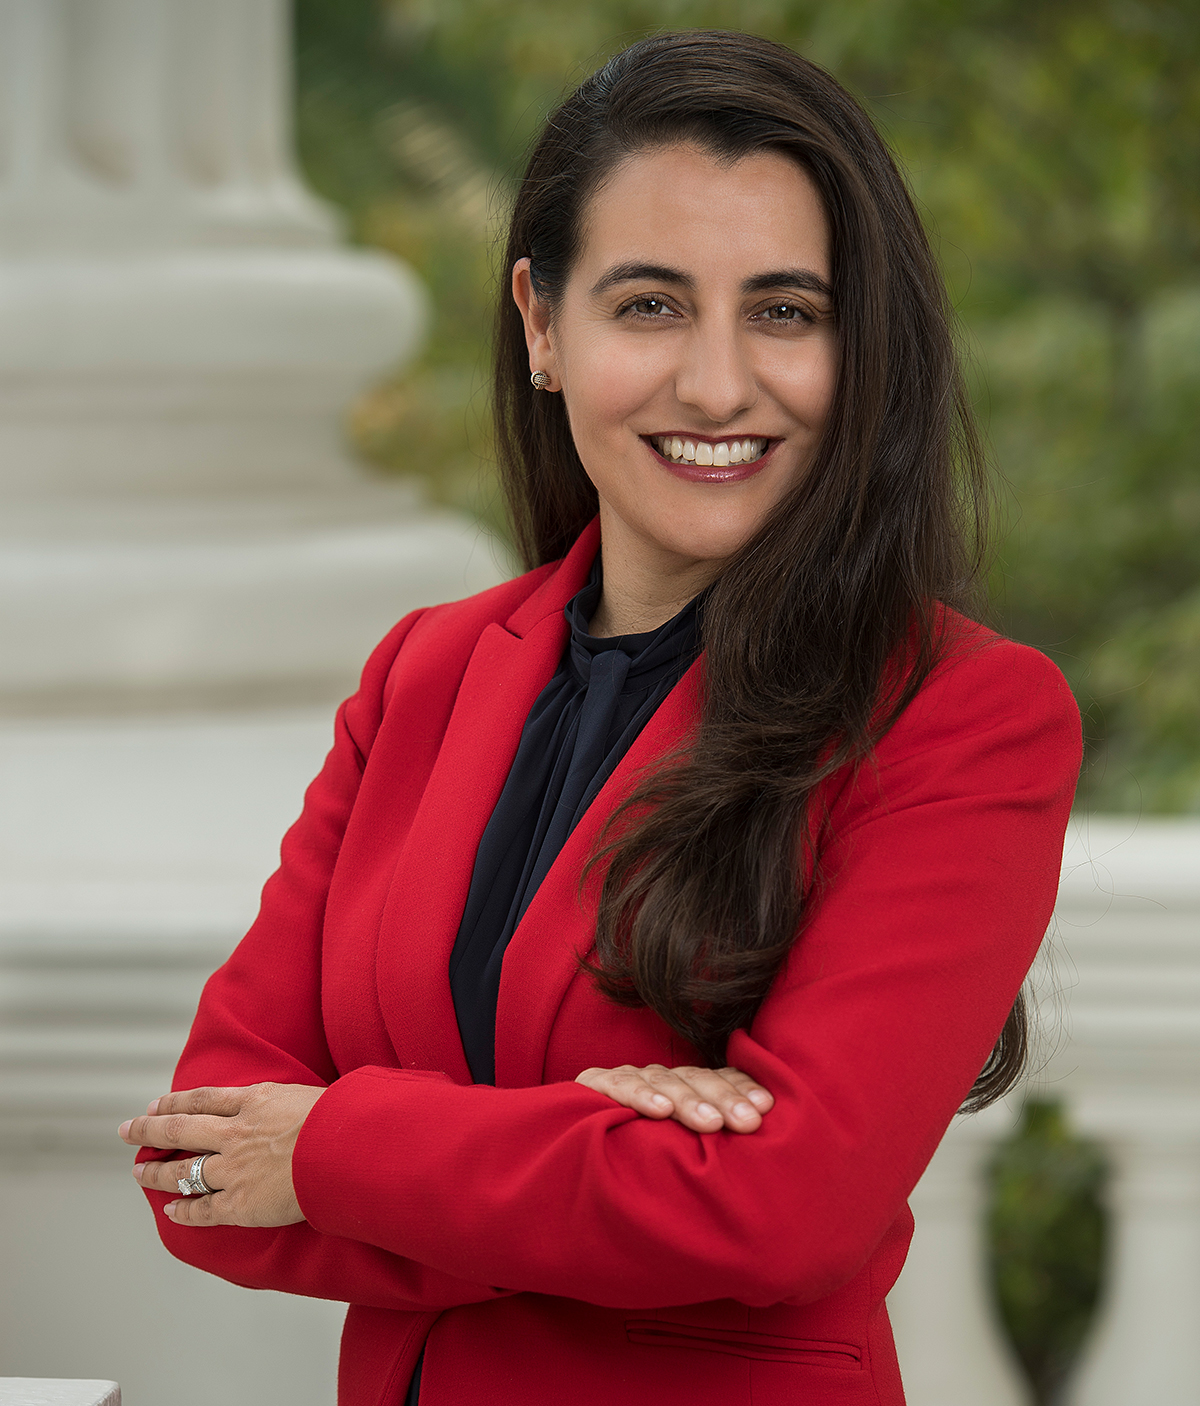 Monique Limon Miembro del Senado del Estado de California